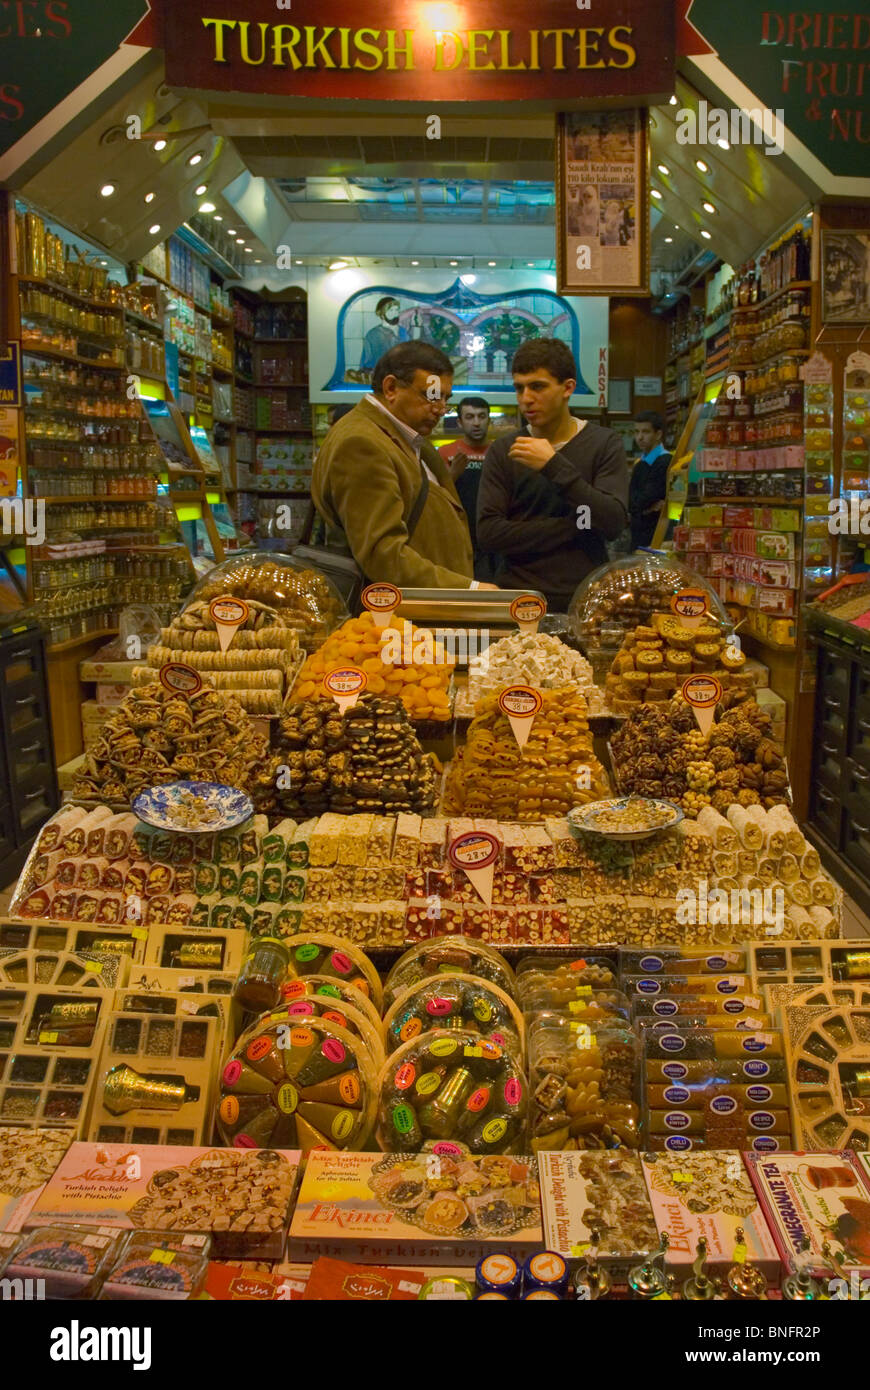 Les loukoums stand Misir Karsisi (marché aux épices) Sultanahmet Istanbul Turquie Europe Banque D'Images